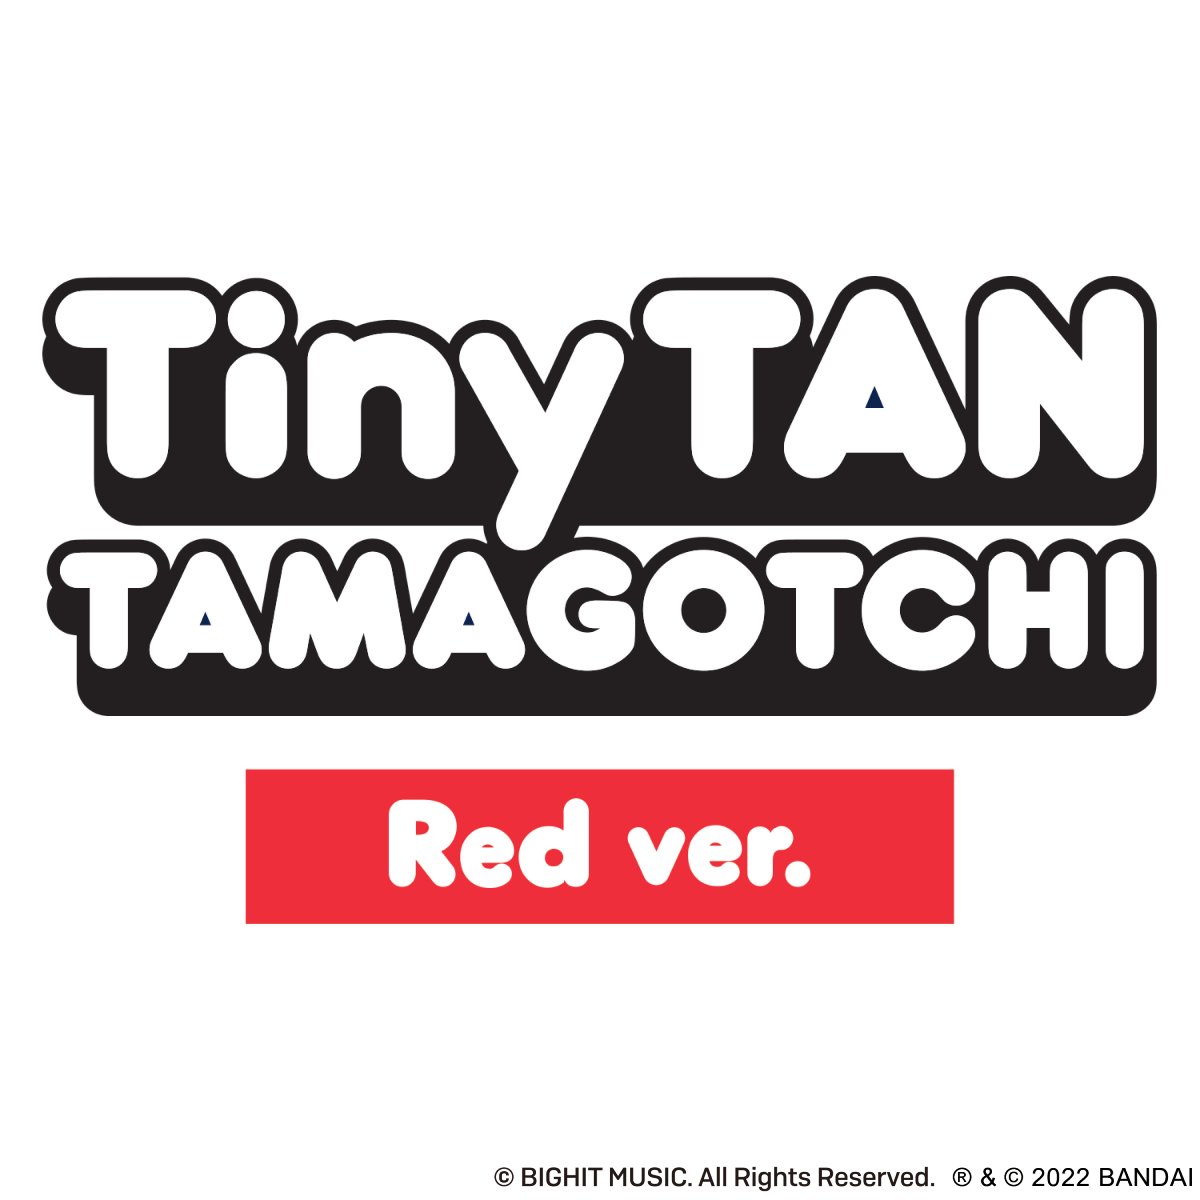 TinyTAN Tamagotchi